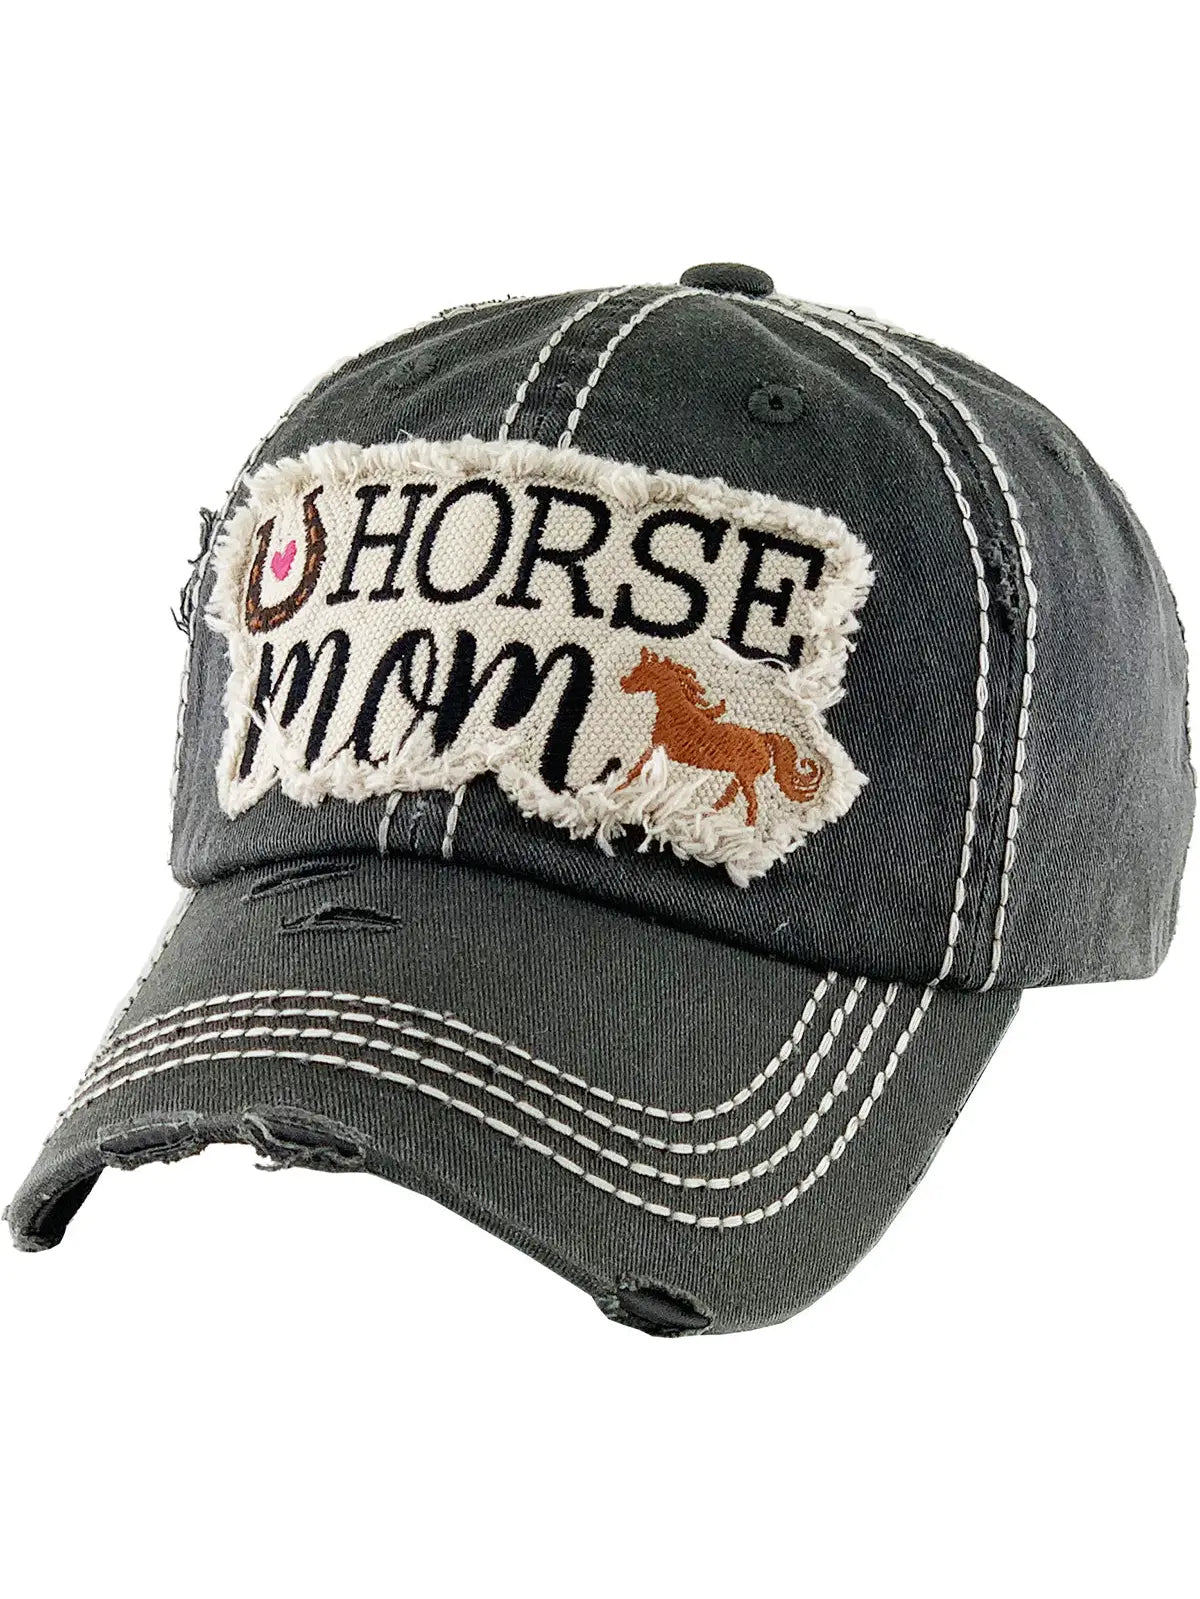 AWST Black Horse Mom Hat BOCA DELRAY